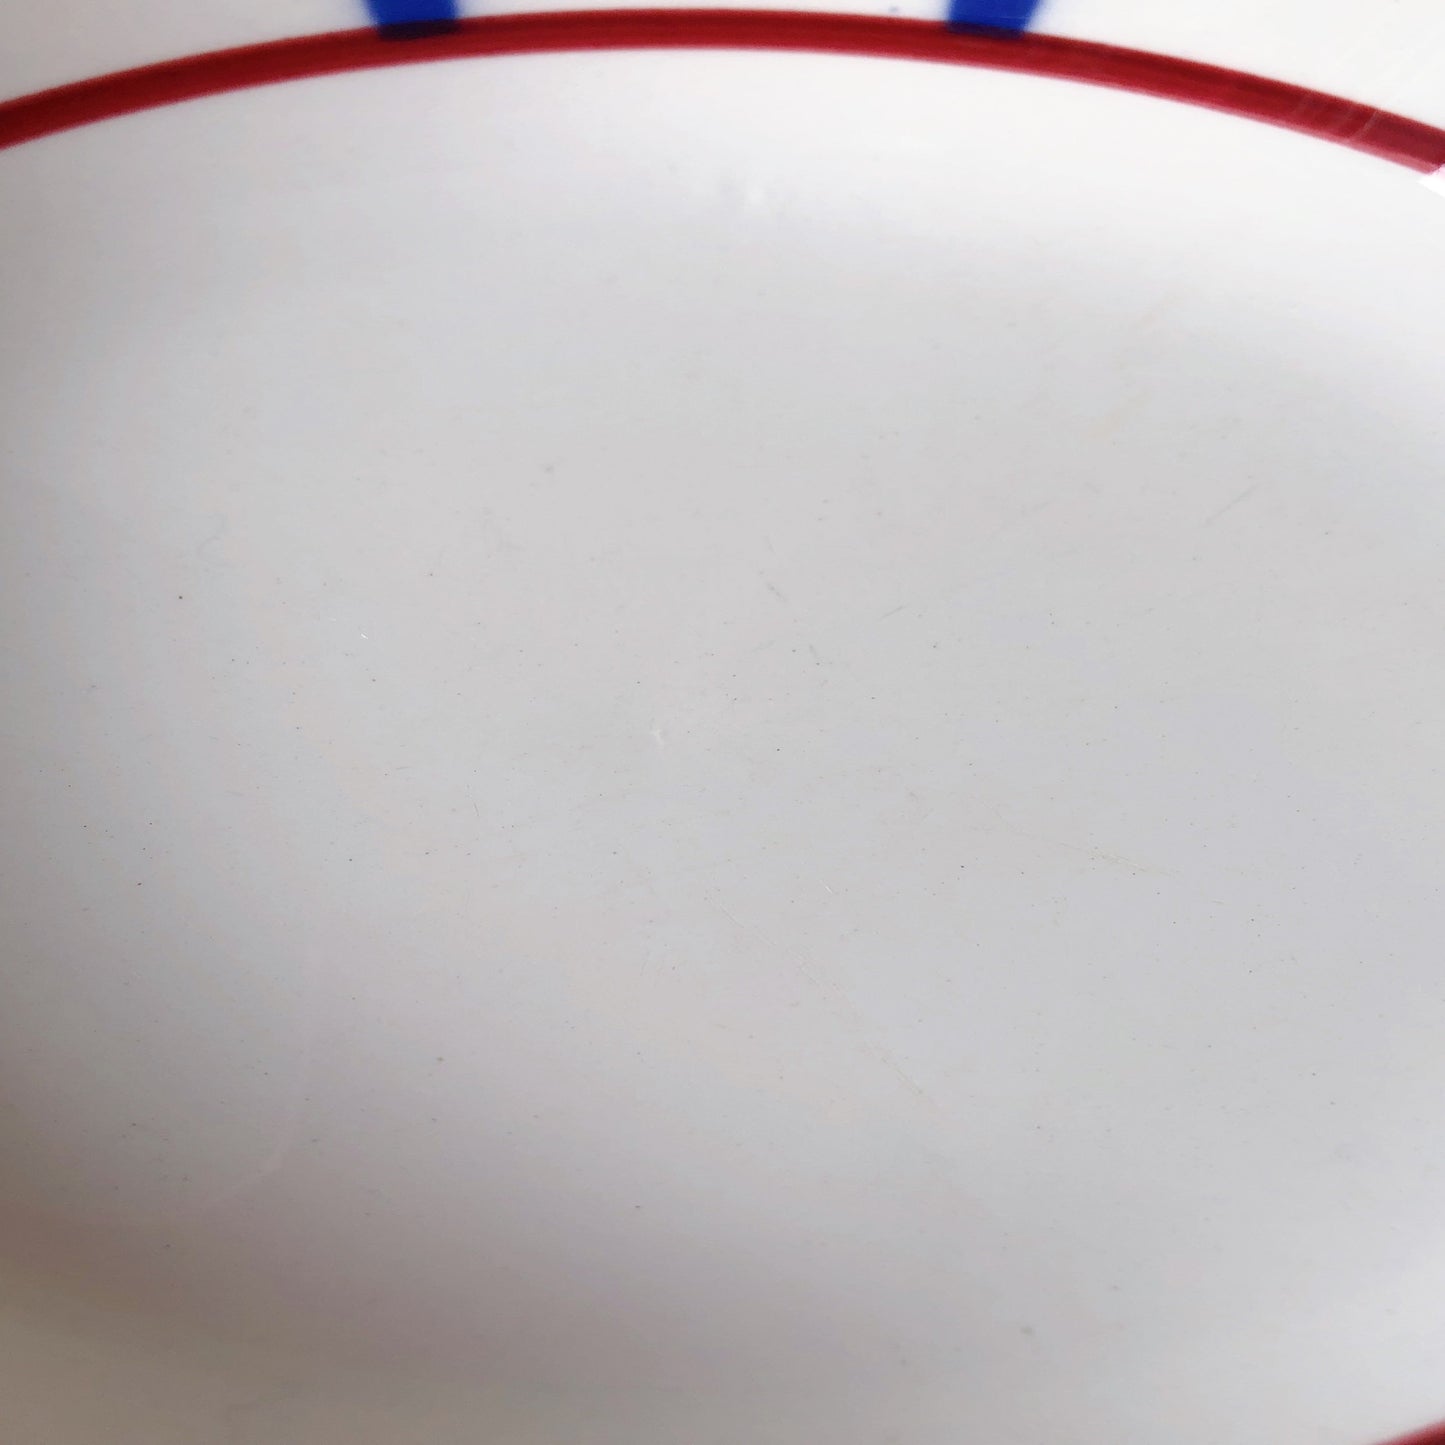 【ご予約】ディゴワンサルグミンヌ バスク柄 キャロットプレート 『ルージュ・マリン』C フランスアンティーク食器 フランス蚤の市・ブロカント バスク柄スーププレート キャロット皿 深皿